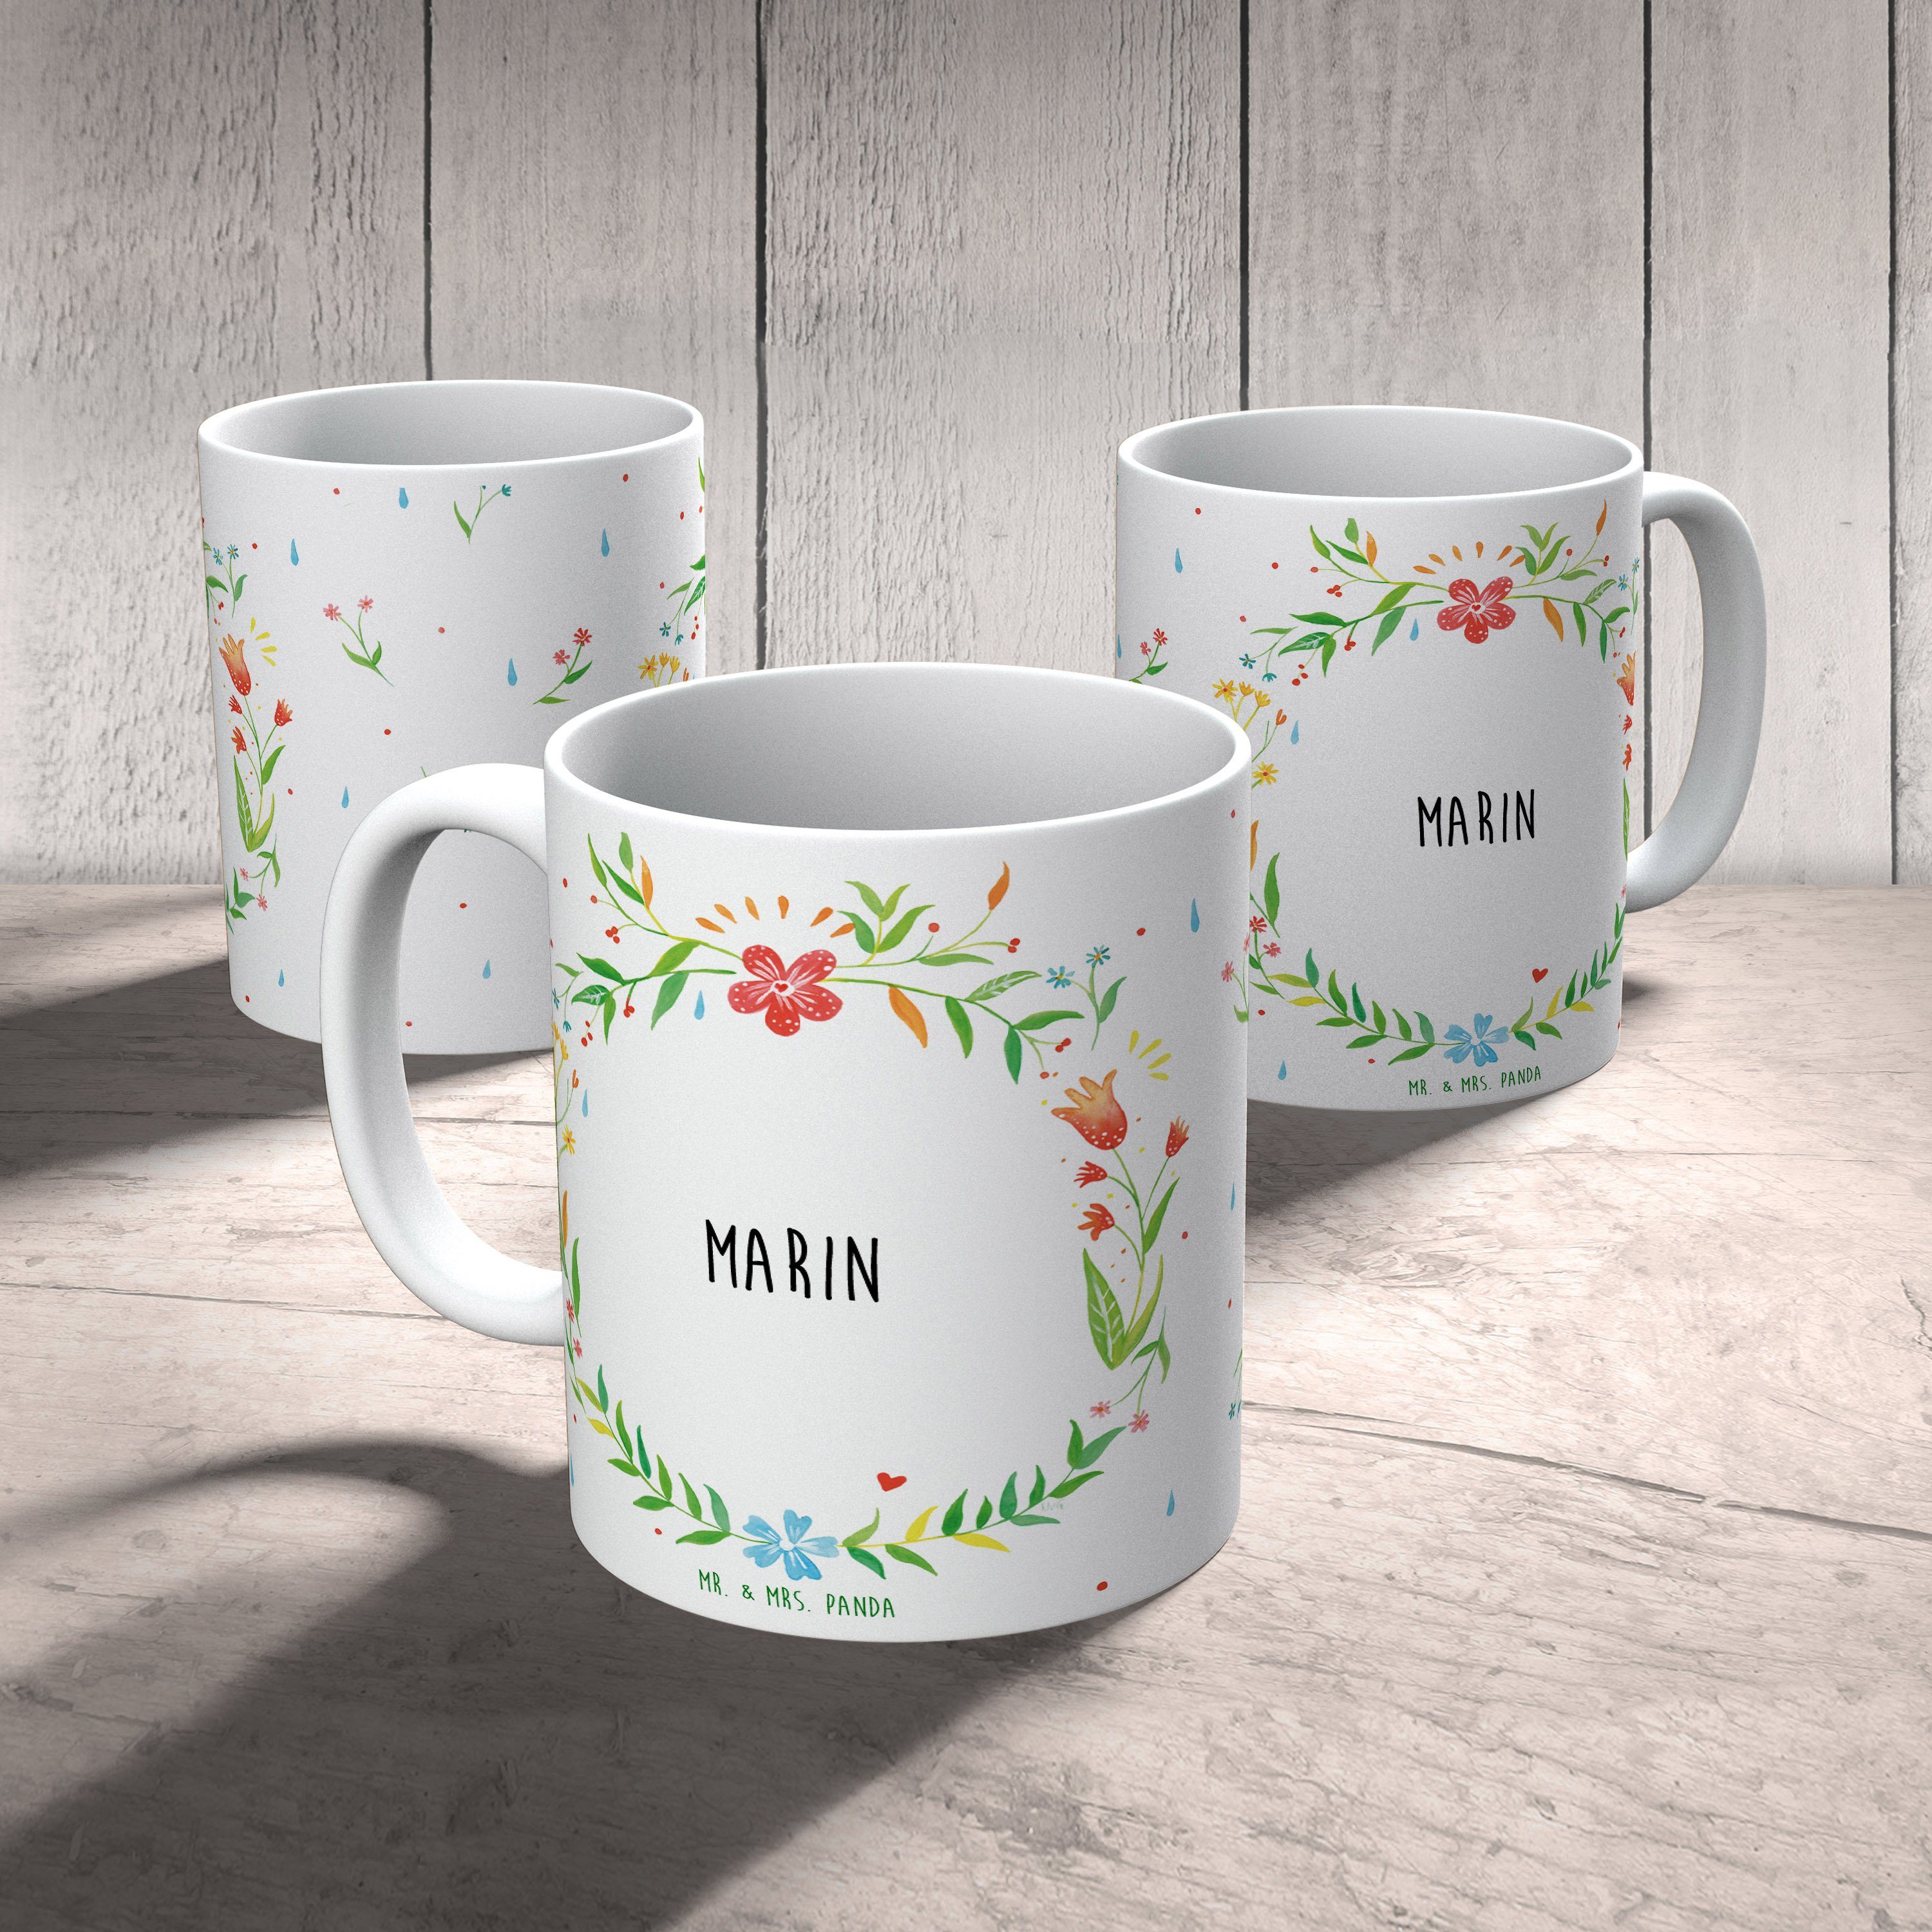 Tasse Marin Panda Mrs. Tasse, Mr. Kaffeeb, Tasse Sprüche, Geschenk - & Geschenk, Keramik Kaffeetasse,